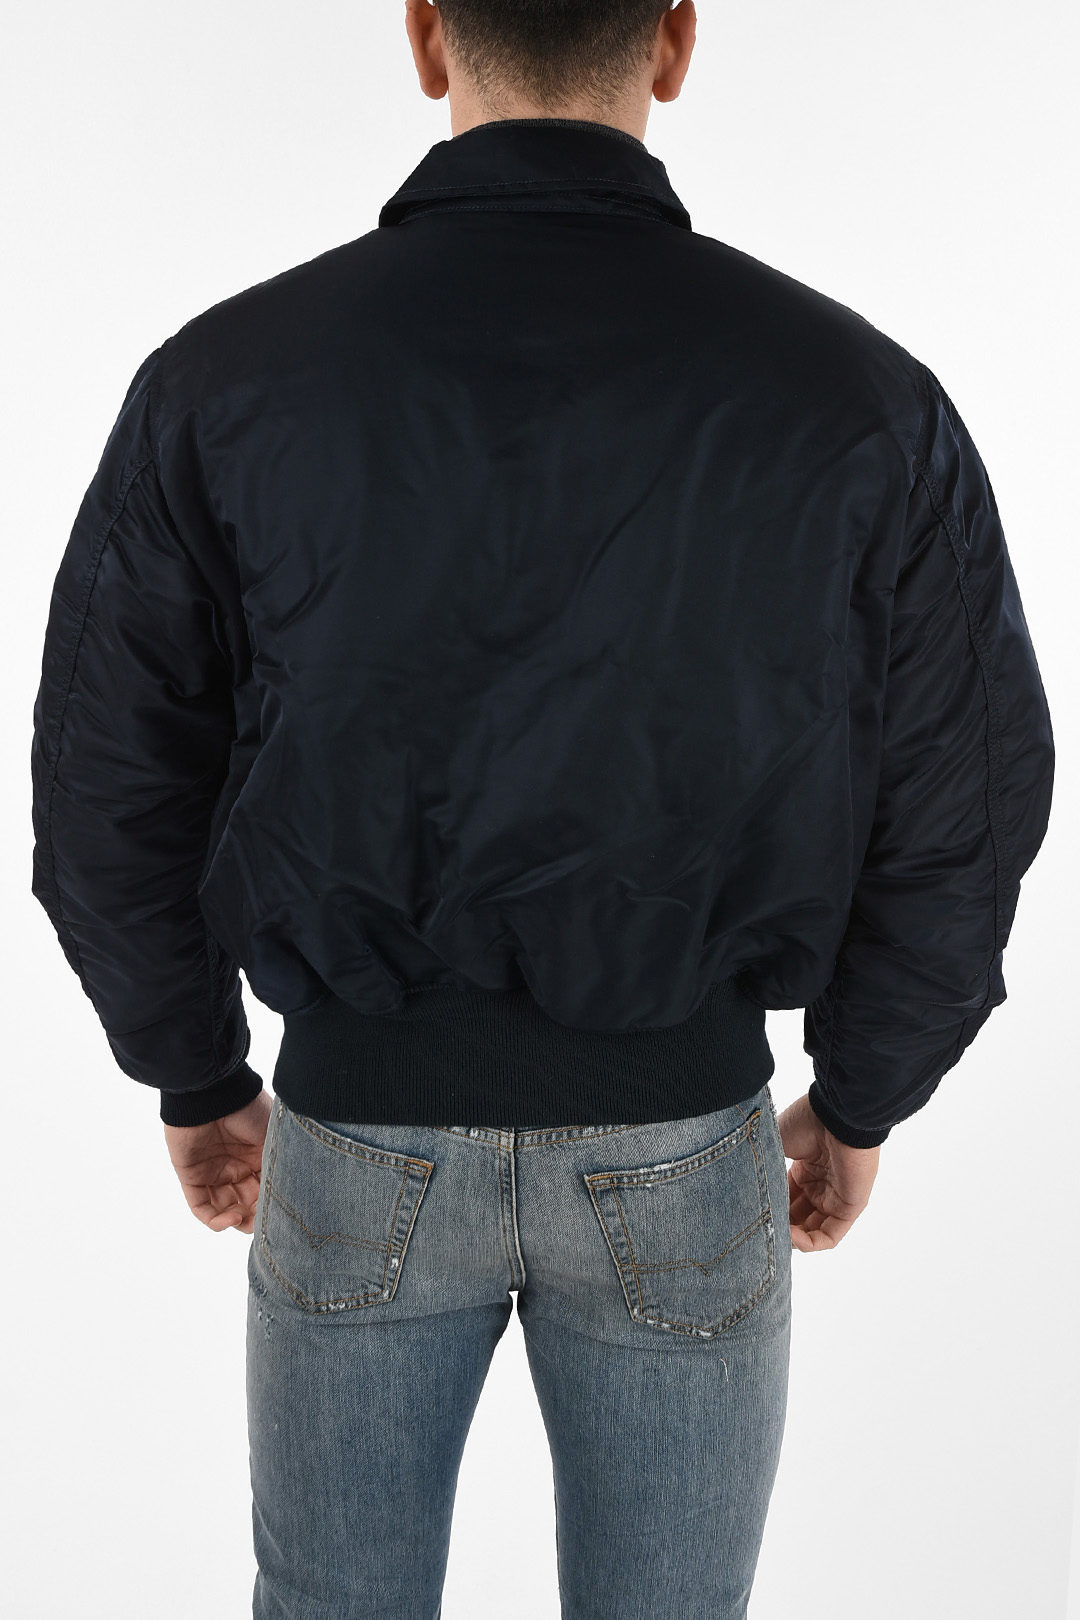 ジャケット/アウター ミリタリージャケット full zip utility fatigue jacket